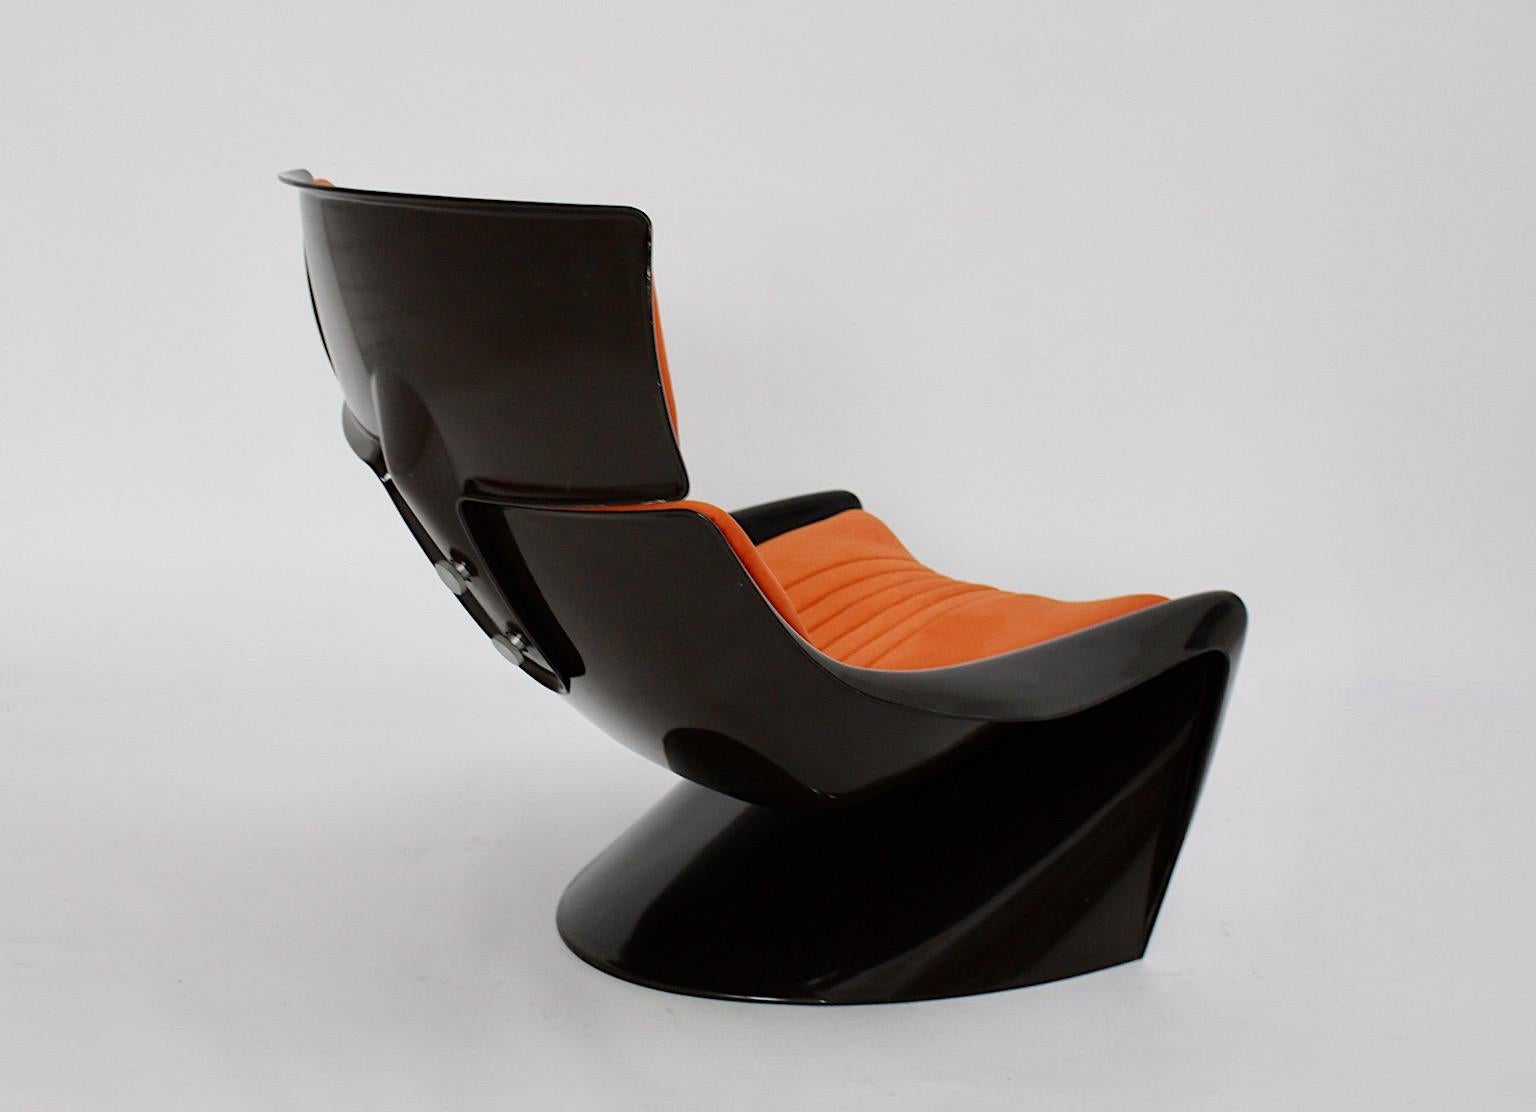 Space Age Vintage Lounge Chair oder Clubsessel Meteor oder President Chair aus Kunststoff und Textilpolsterung in den Farben braun und orange.
Ein kühner, authentischer, freistehender Loungesessel, perfekt zum Entspannen und Lesen eines Buches als